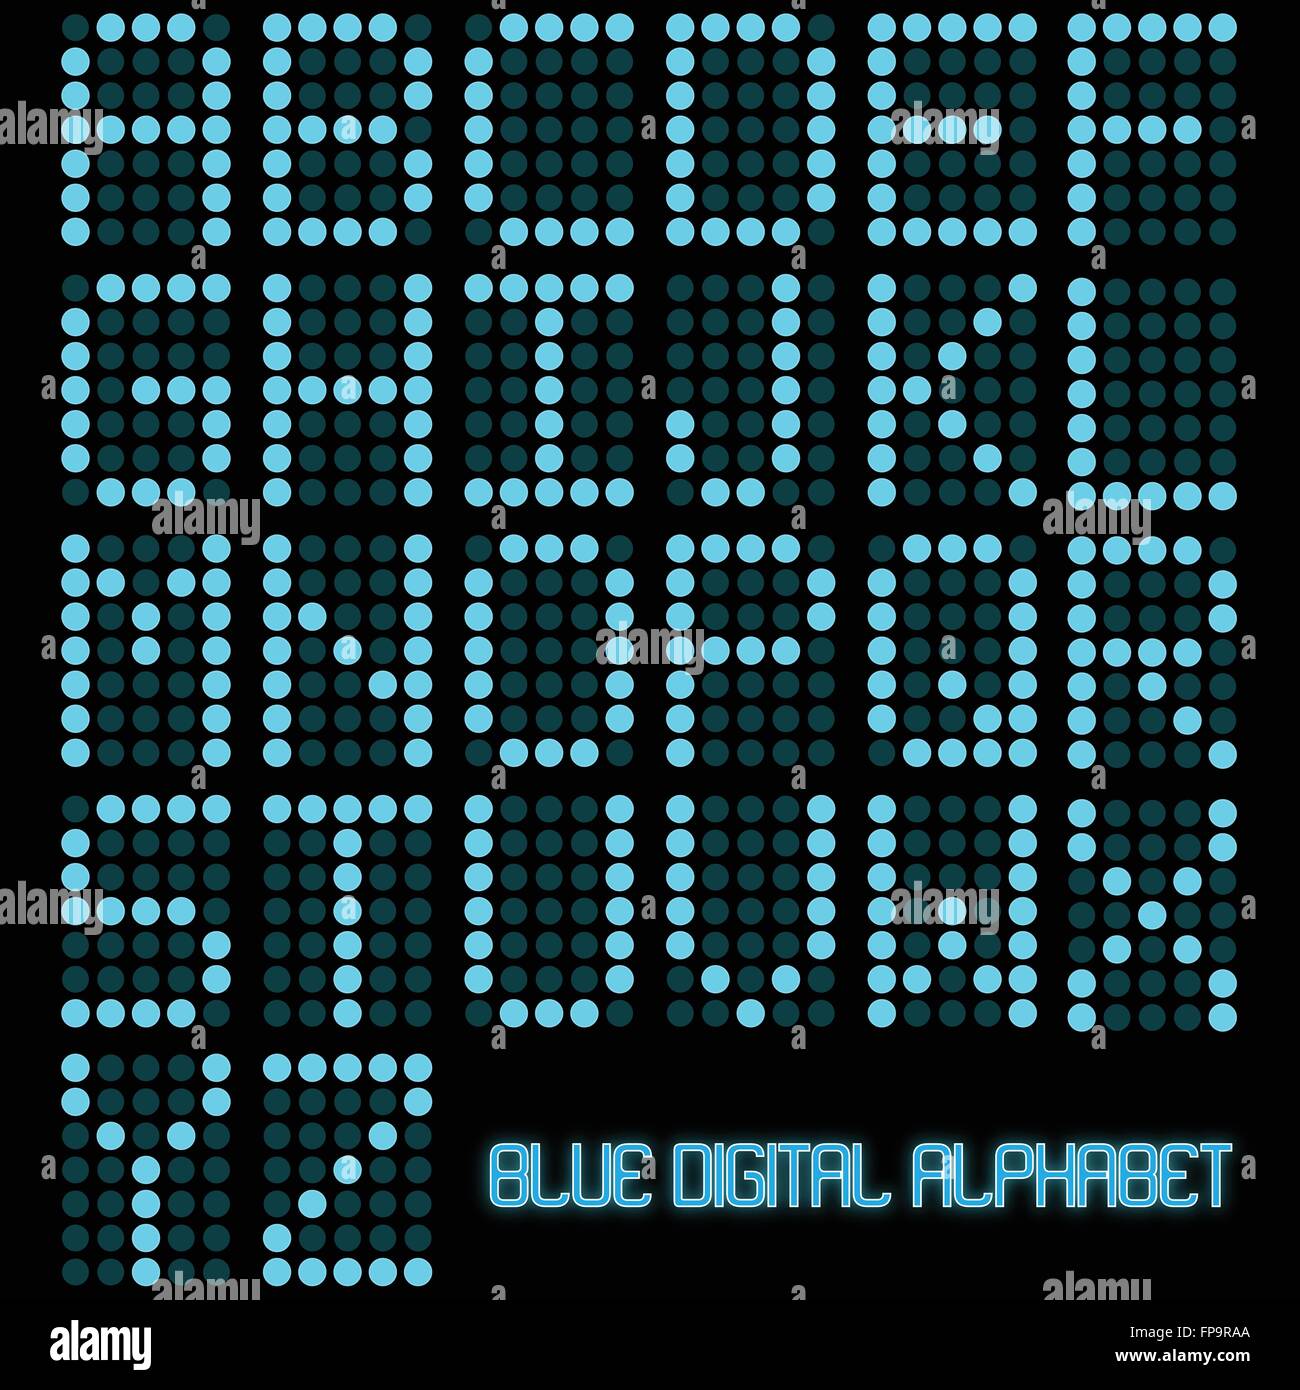 Immagine di un digitale alfabeto blu su sfondo scuro. Illustrazione Vettoriale